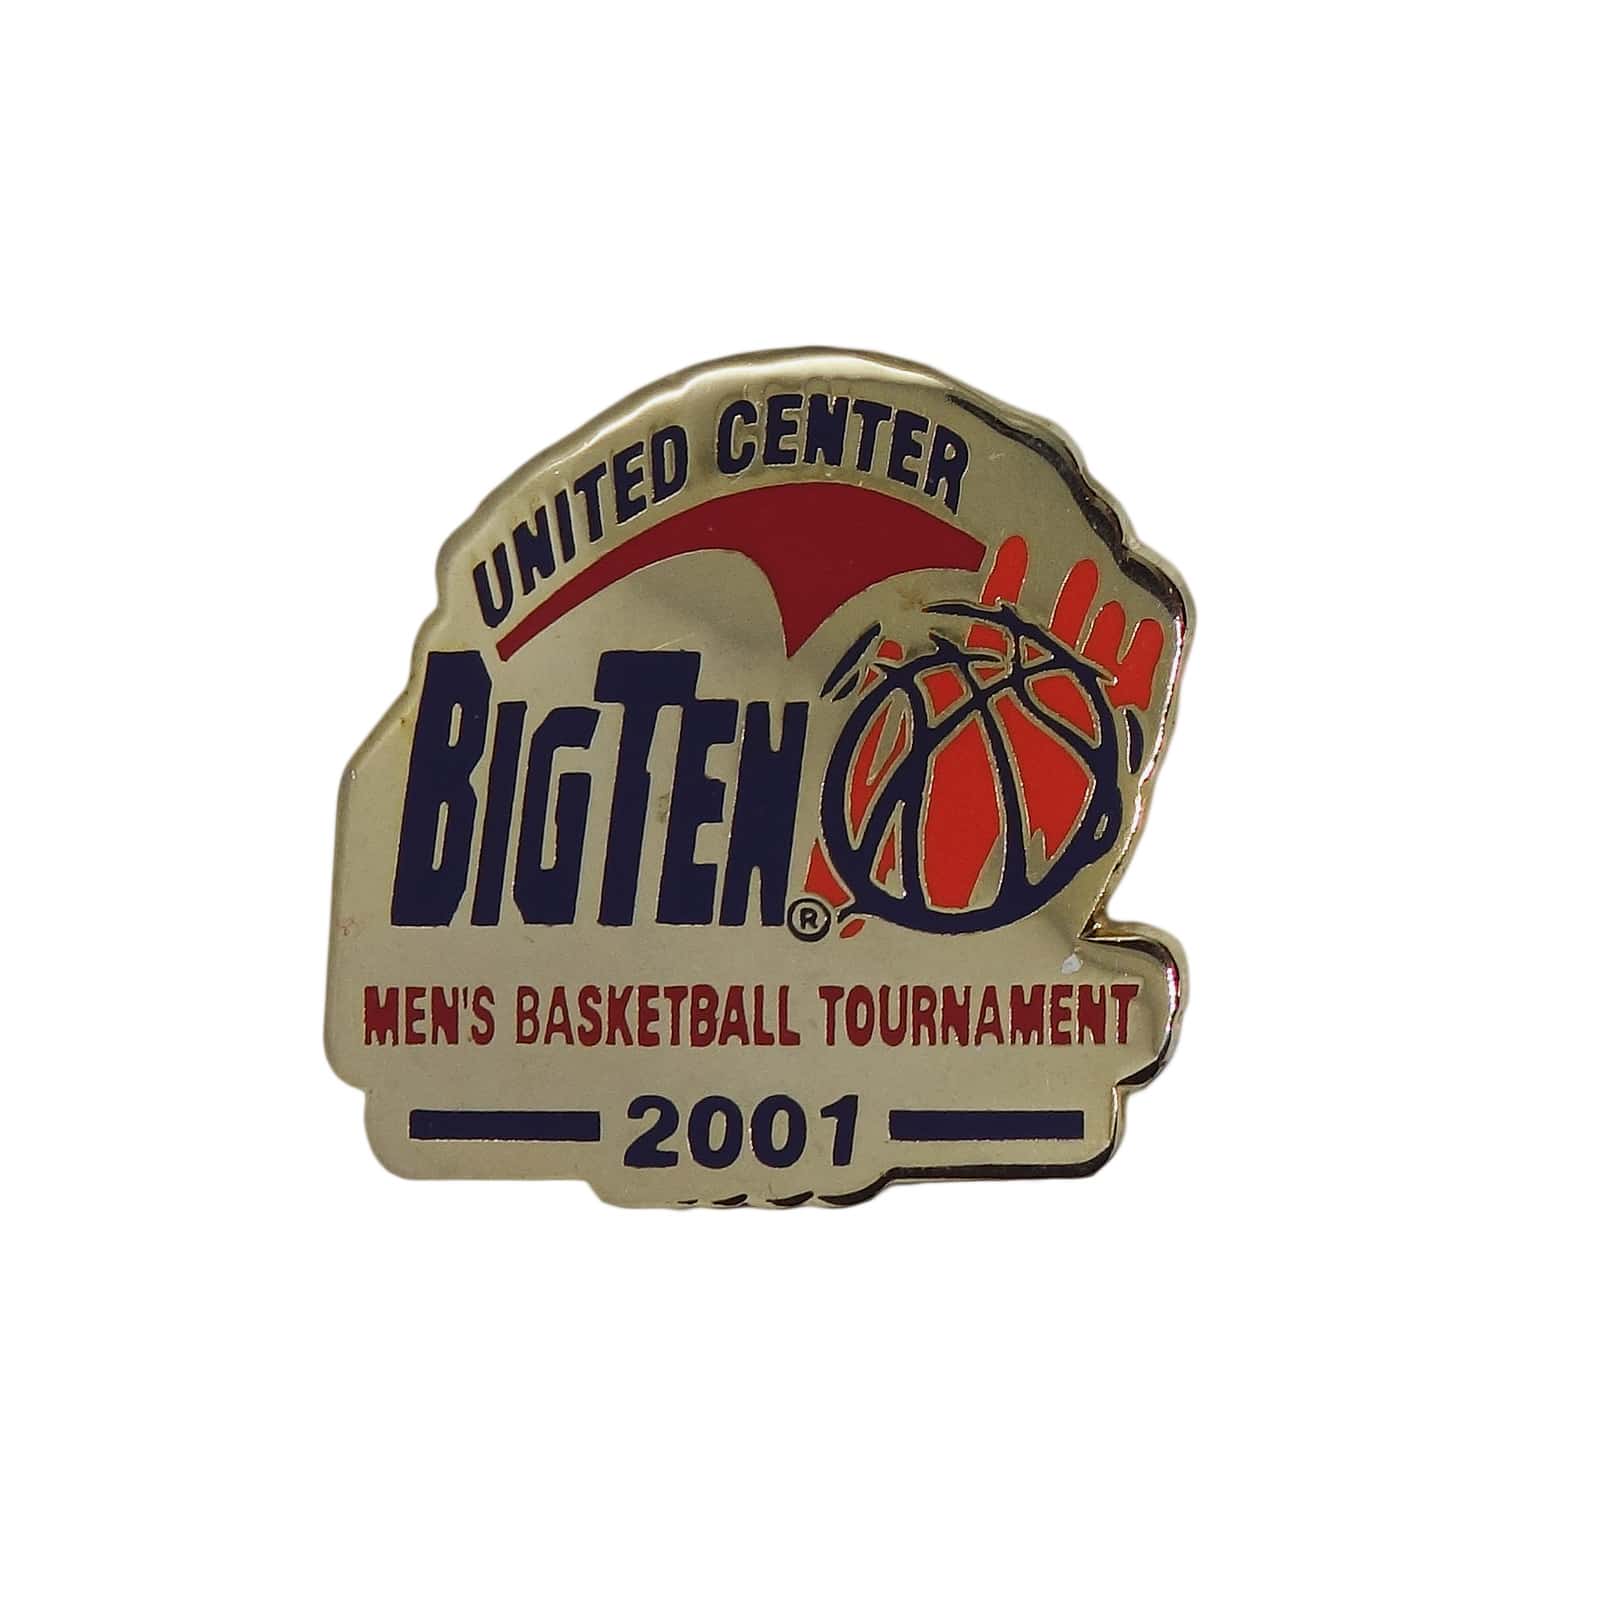 BIG TEN 男子バスケットボール トーナメント 2001 ピンズ 留め具付き